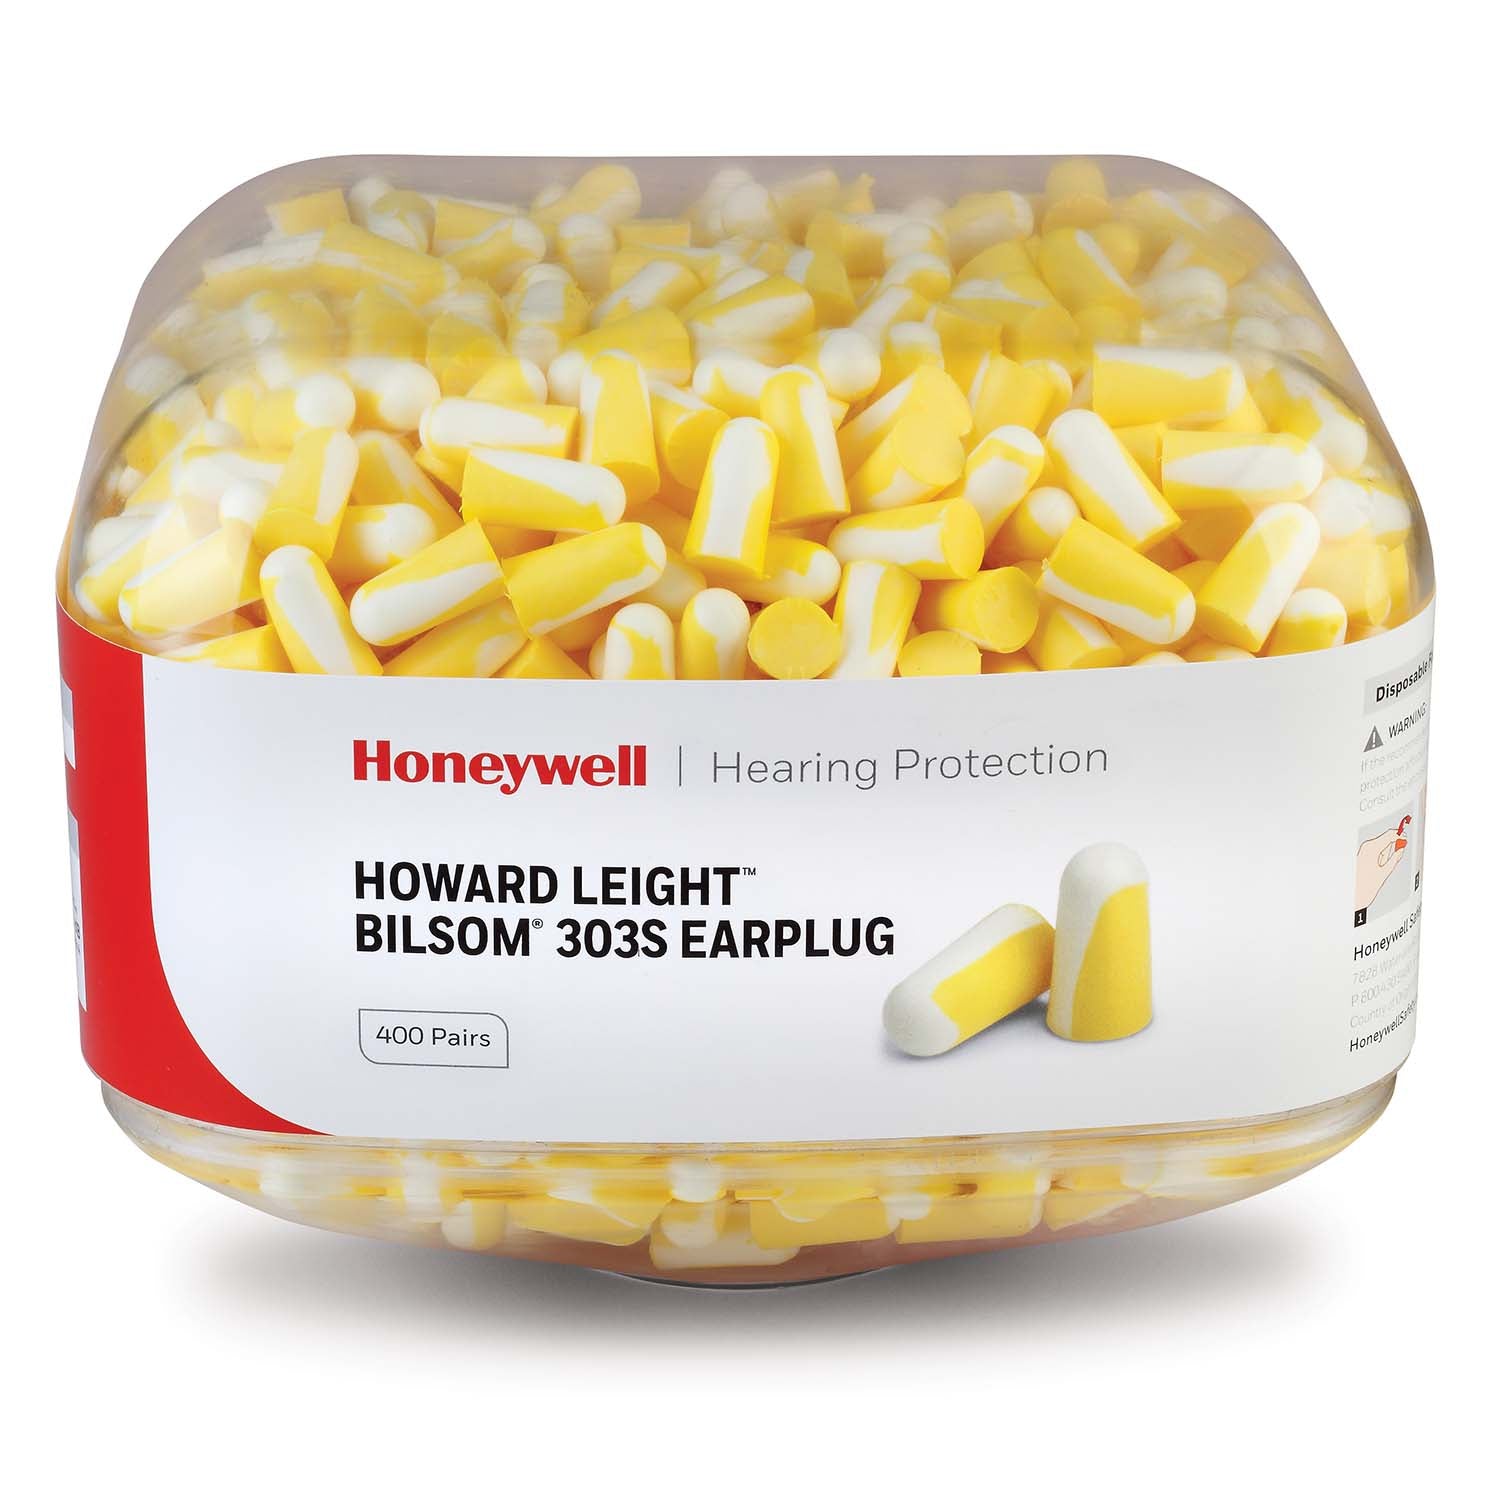 Honeywell Howard Leight Bilsom 303S Earplug Refill Canister for HL400 Dispenser 400 pairs